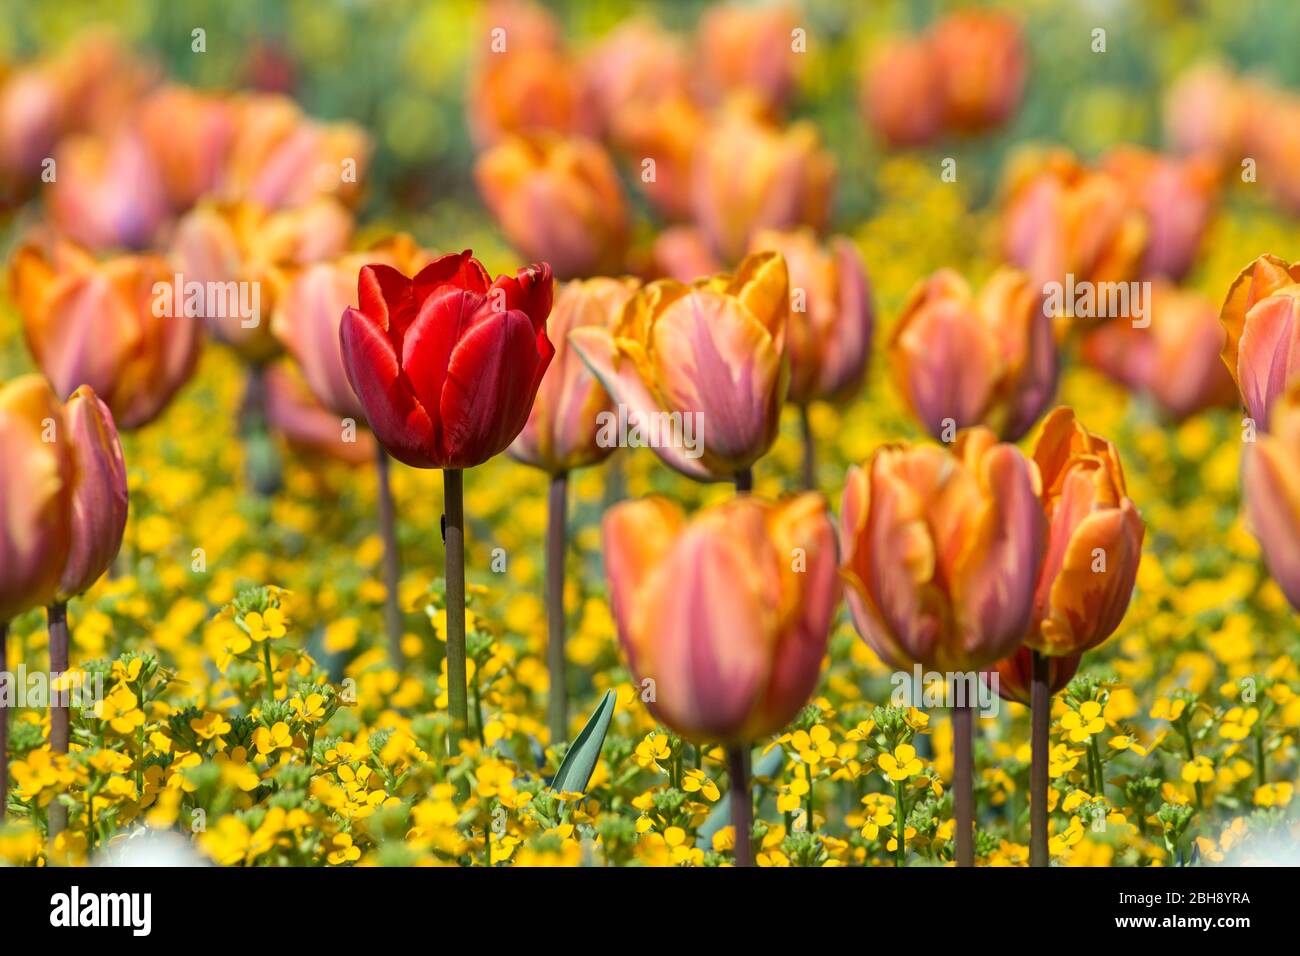 Deutschland, Baden-Württemberg, Rote Tulpe zwischen gelb-rosa Tulpen Foto Stock